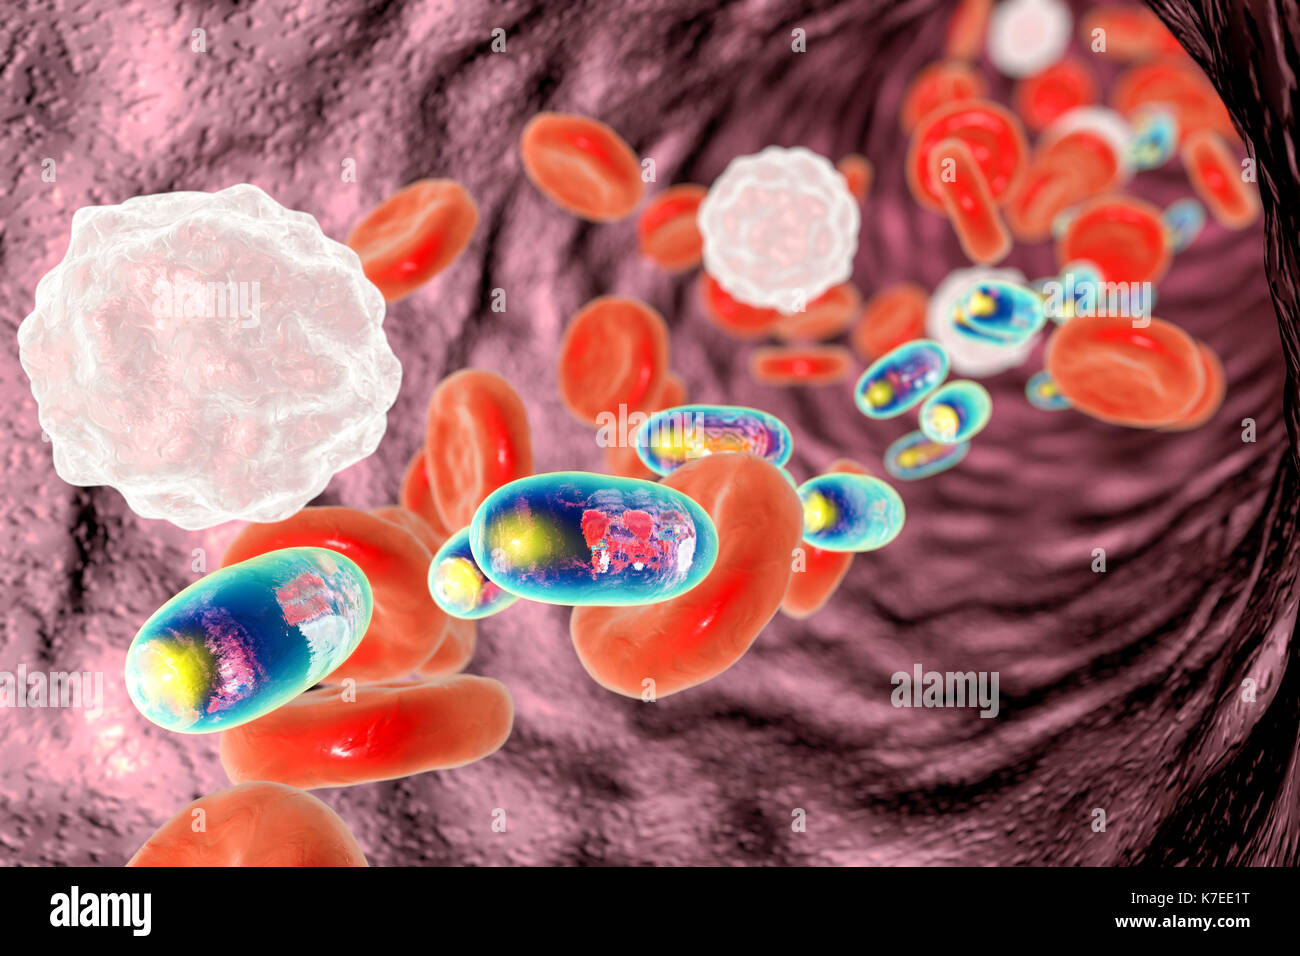 Il chitosano nanoparticelle nel sangue, illustrazione. Immagine concettuale dimostrando un potenziale di trasferimento del farmaco bersagliato utilizzando nanoparticelle polimeriche. Foto Stock